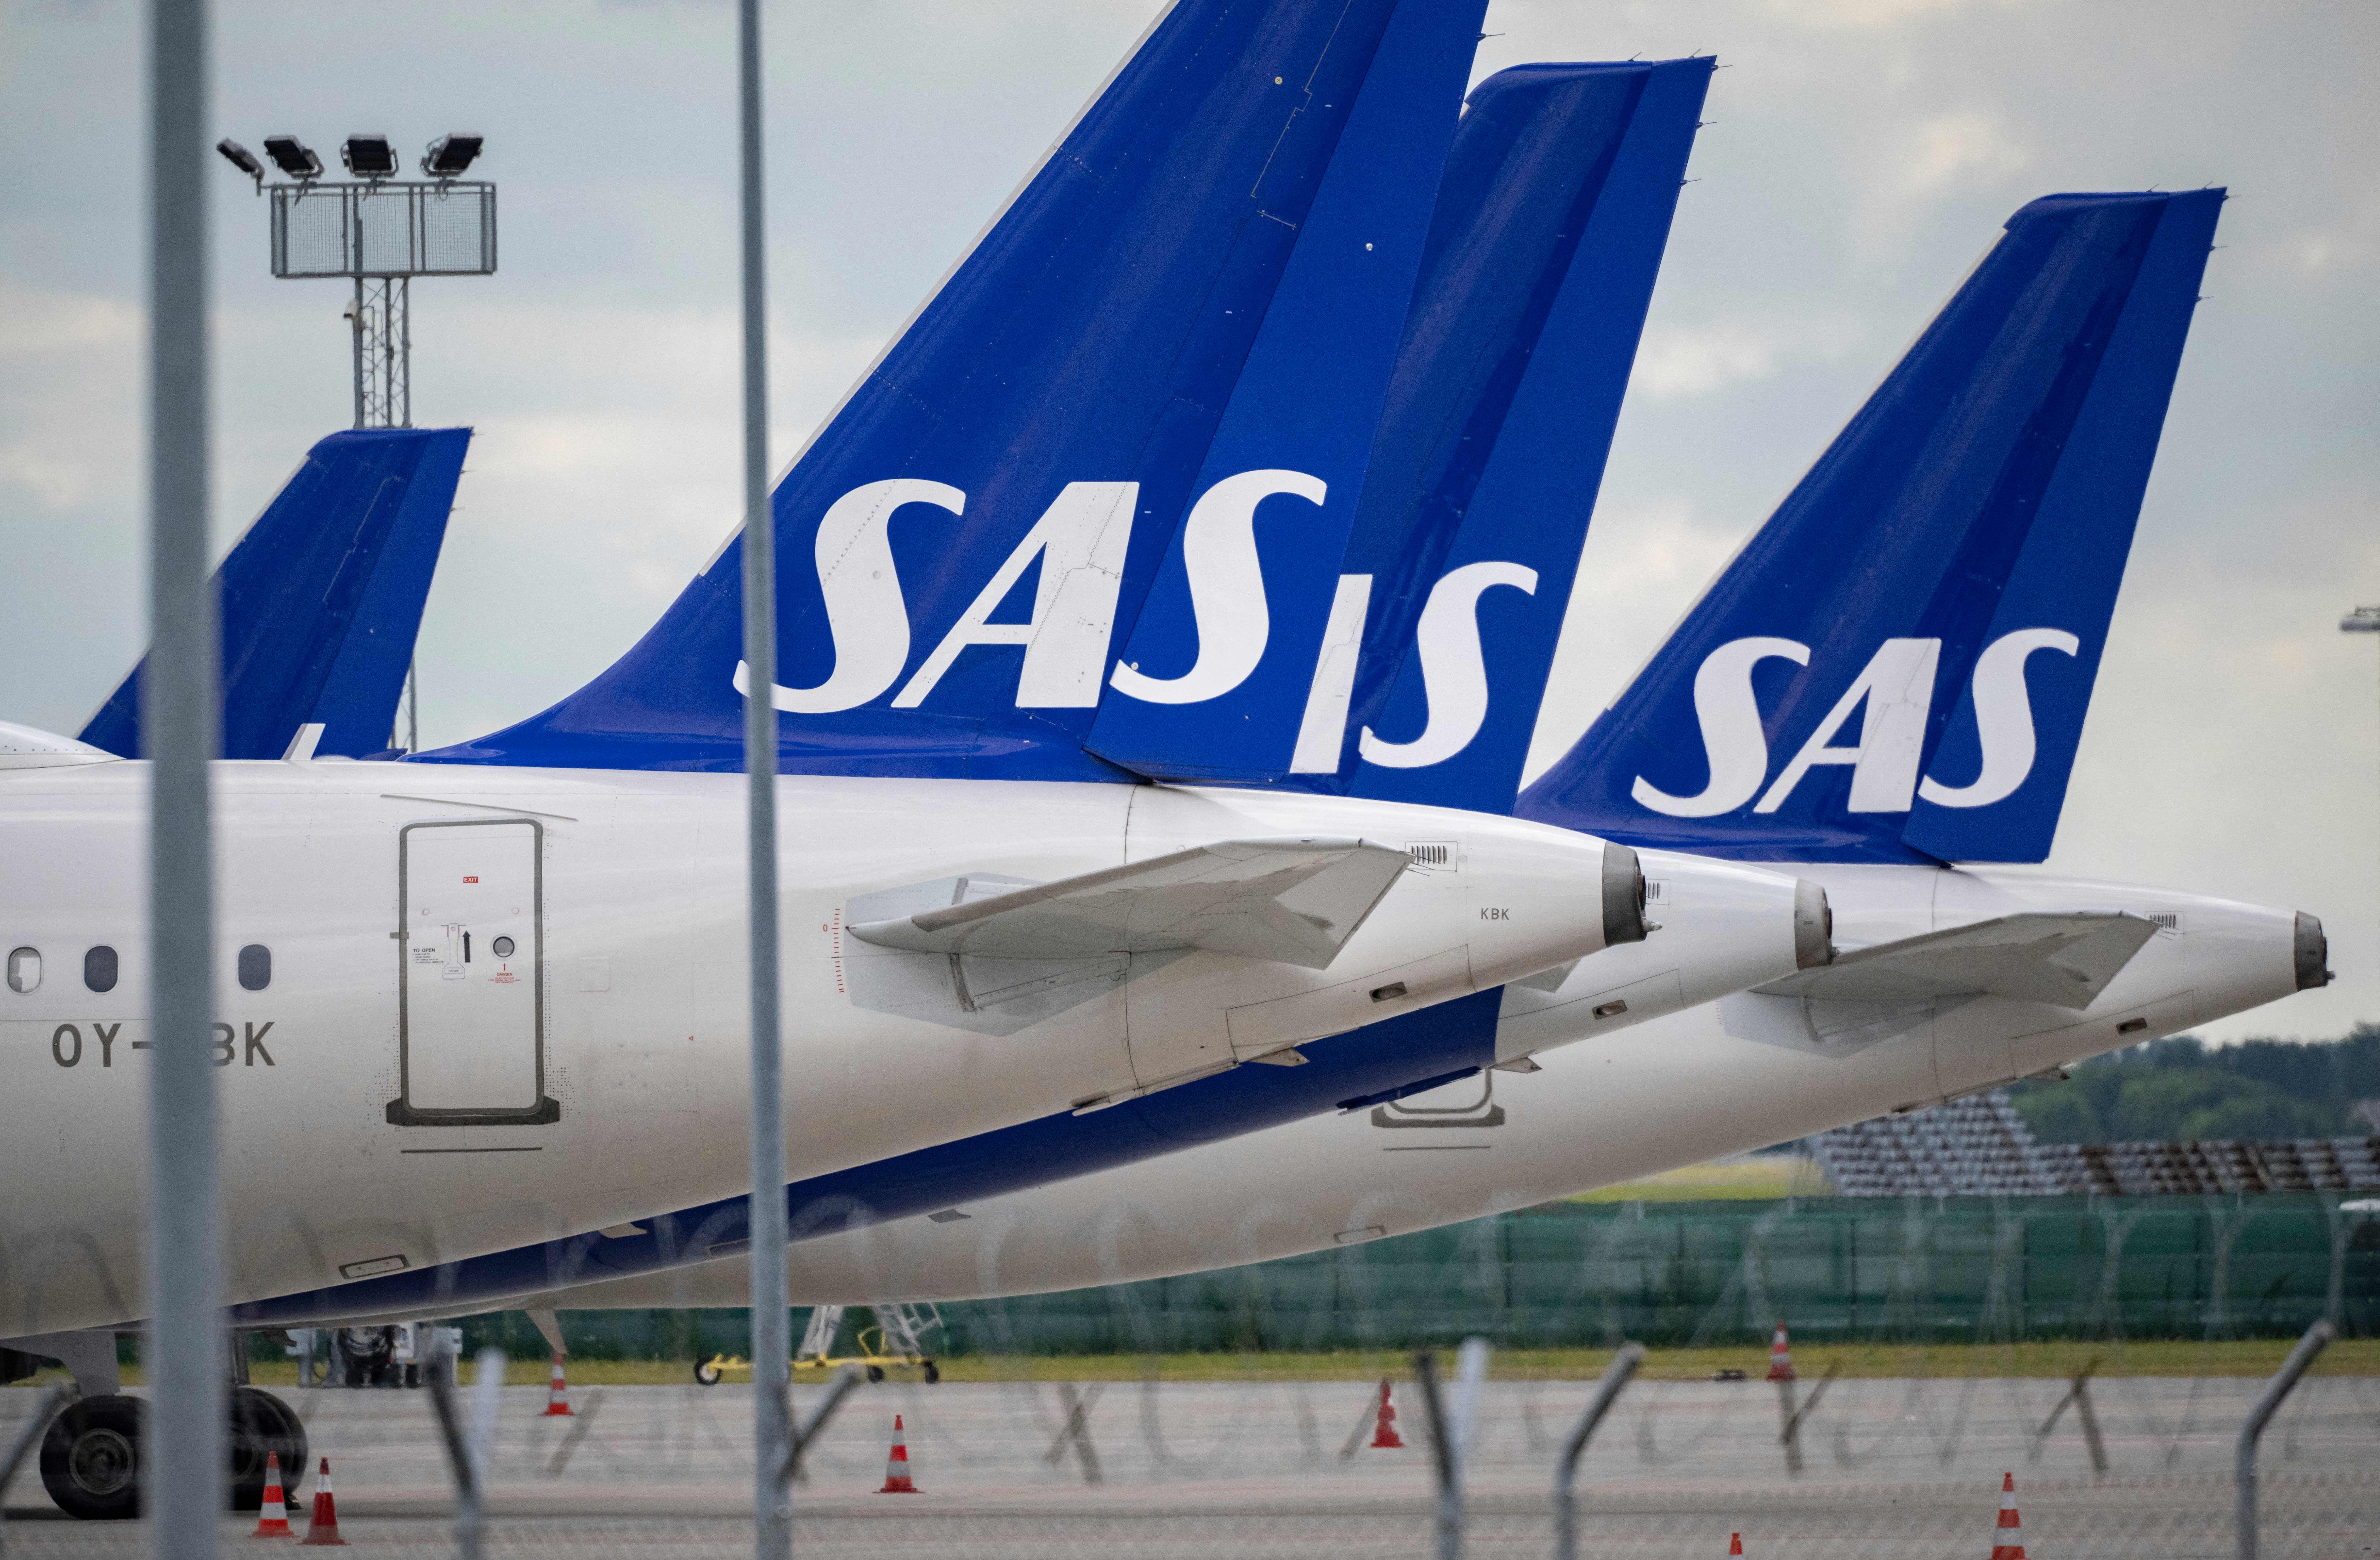 Avrupalı ​​havayolu SAS, yeniden yapılanma anlaşmasının ardından yüzde 95 düştü